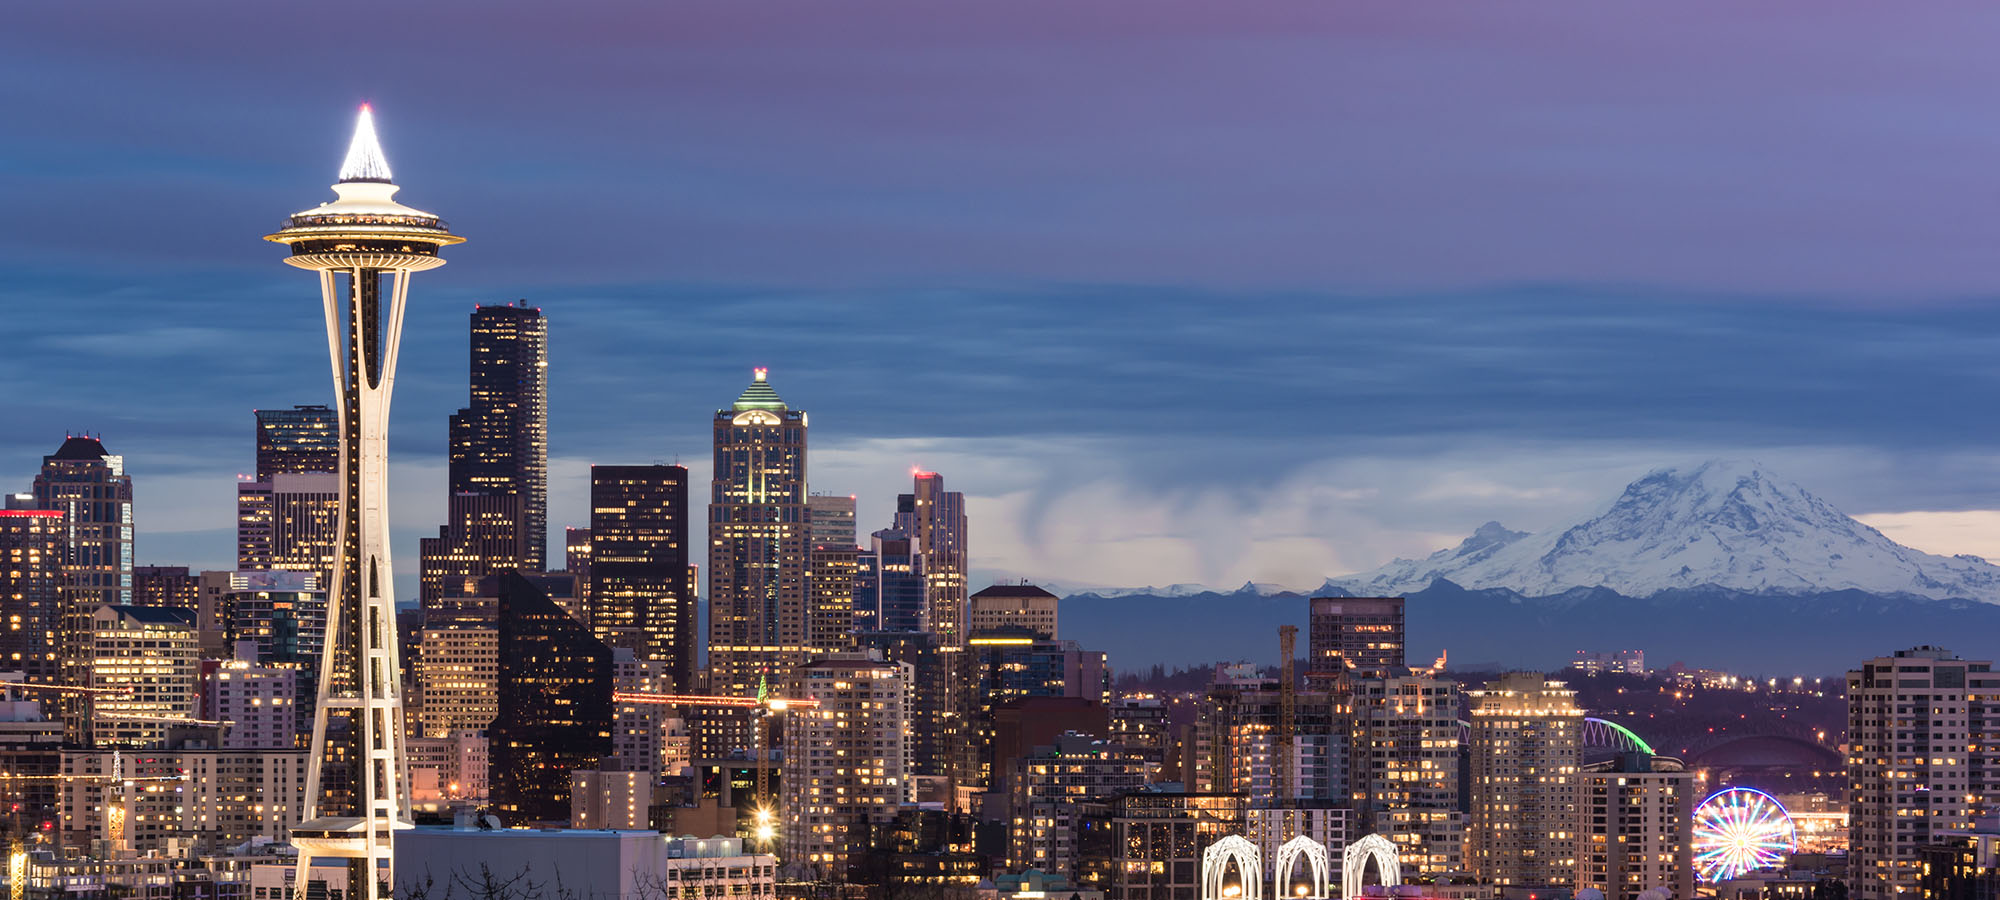 【携程攻略】西雅图太空针塔景点,标志性建筑，不是西雅图城市的最高点，但旋转餐厅性价比还是挺高。周…